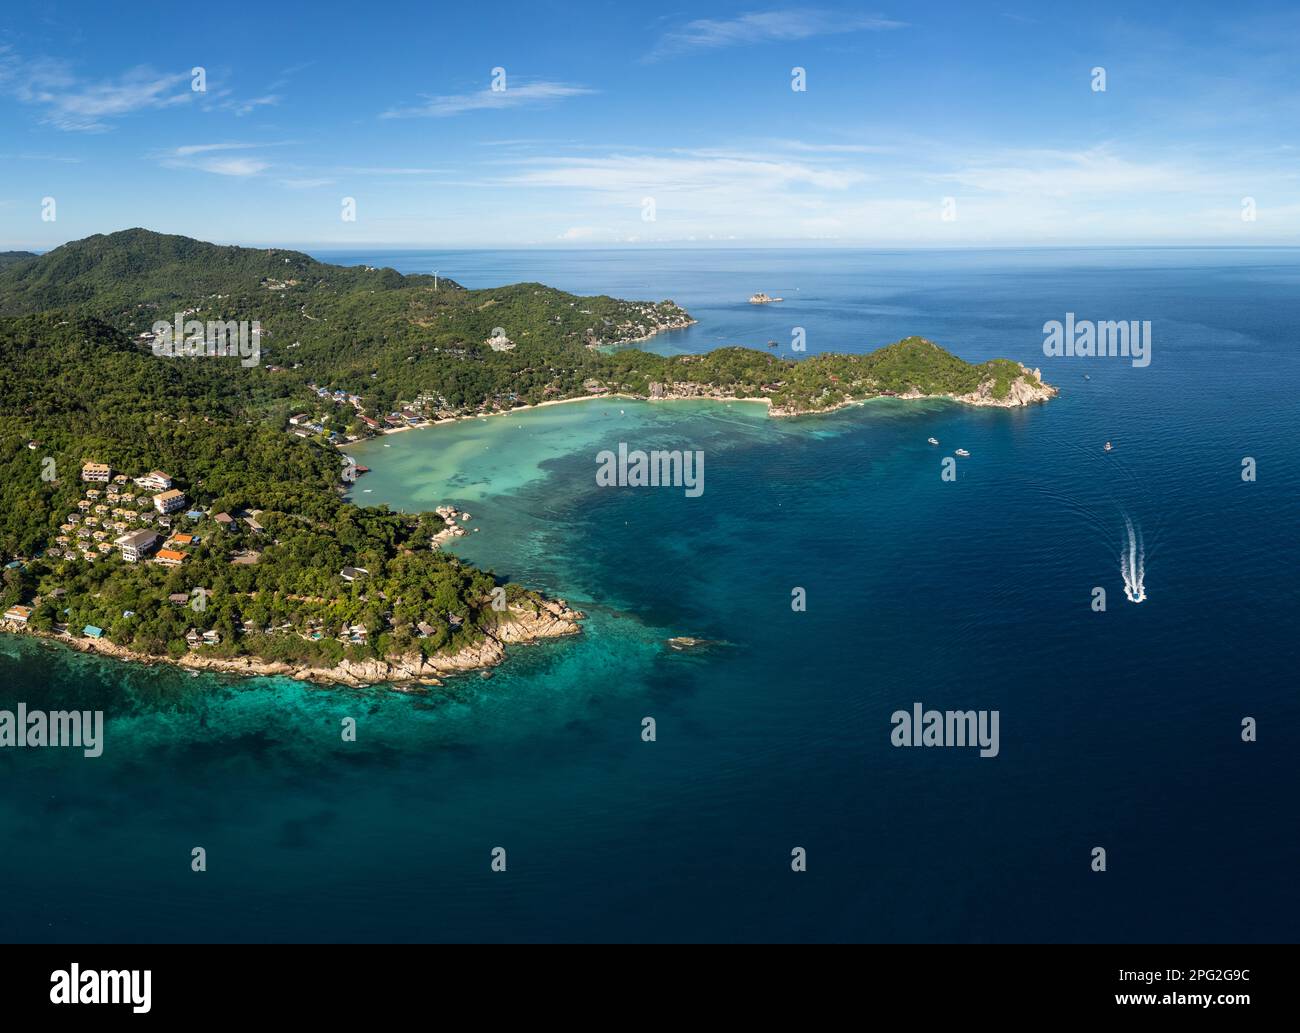 Ko Tao, Thaïlande: Vue aérienne de l'île de Ko Tao dans le golfe de Thaïlande en Asie du Sud-est. L'île est une destination de plongée célèbre. Banque D'Images